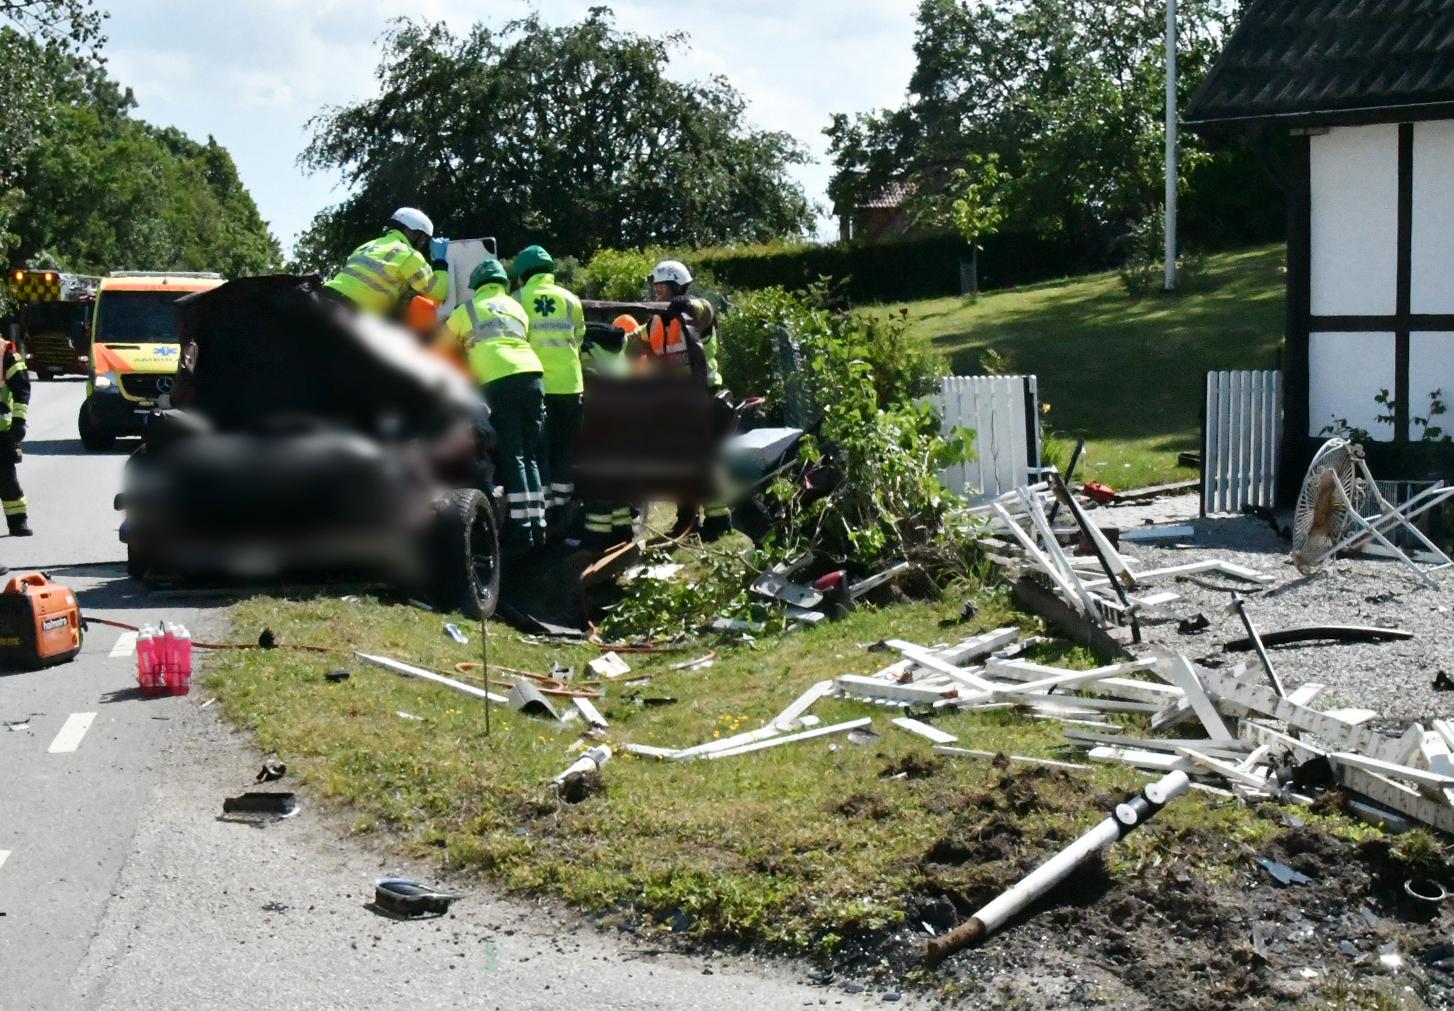 Det var klockan 14.52 som polis, räddningstjänst och ambulans larmades till Fårabäcksvägen i stadsdelen Fosie, norr om Oxie, i Malmö.